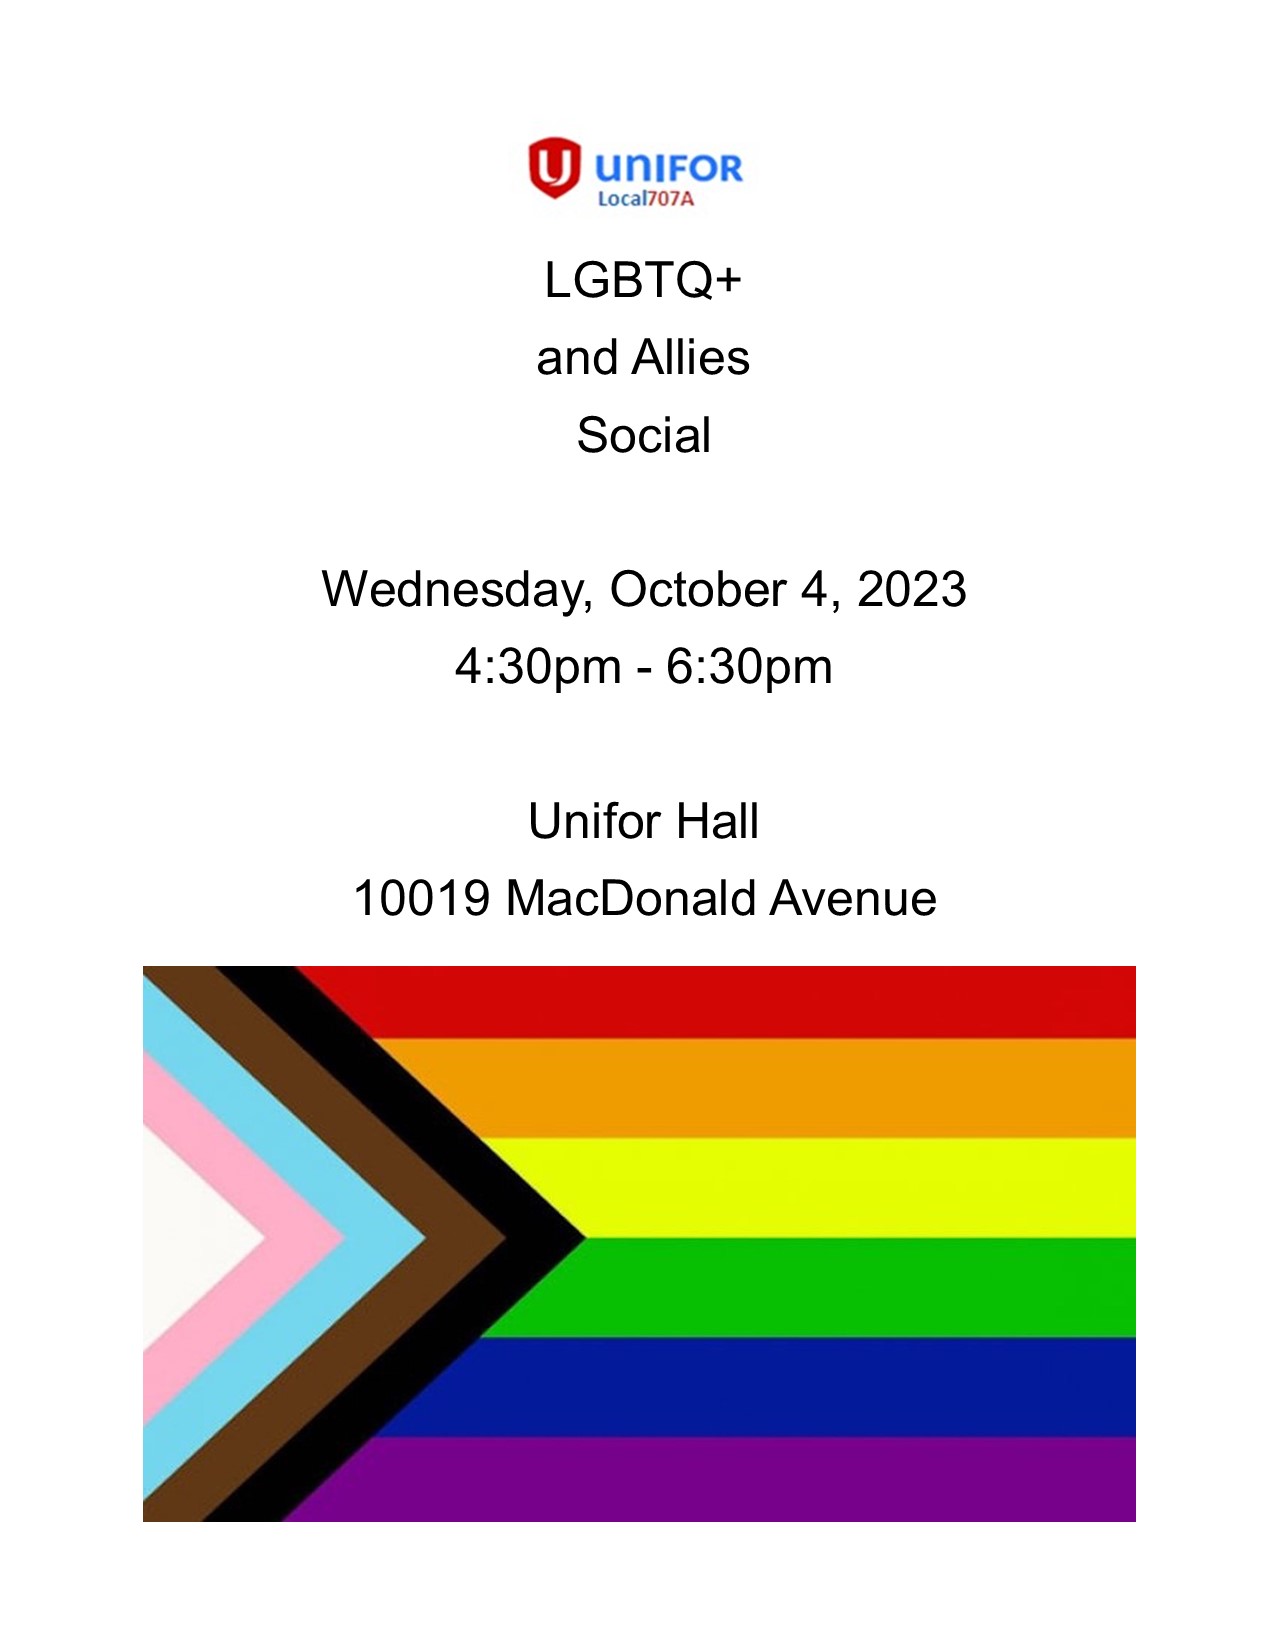 LGBTQ+ Social Event